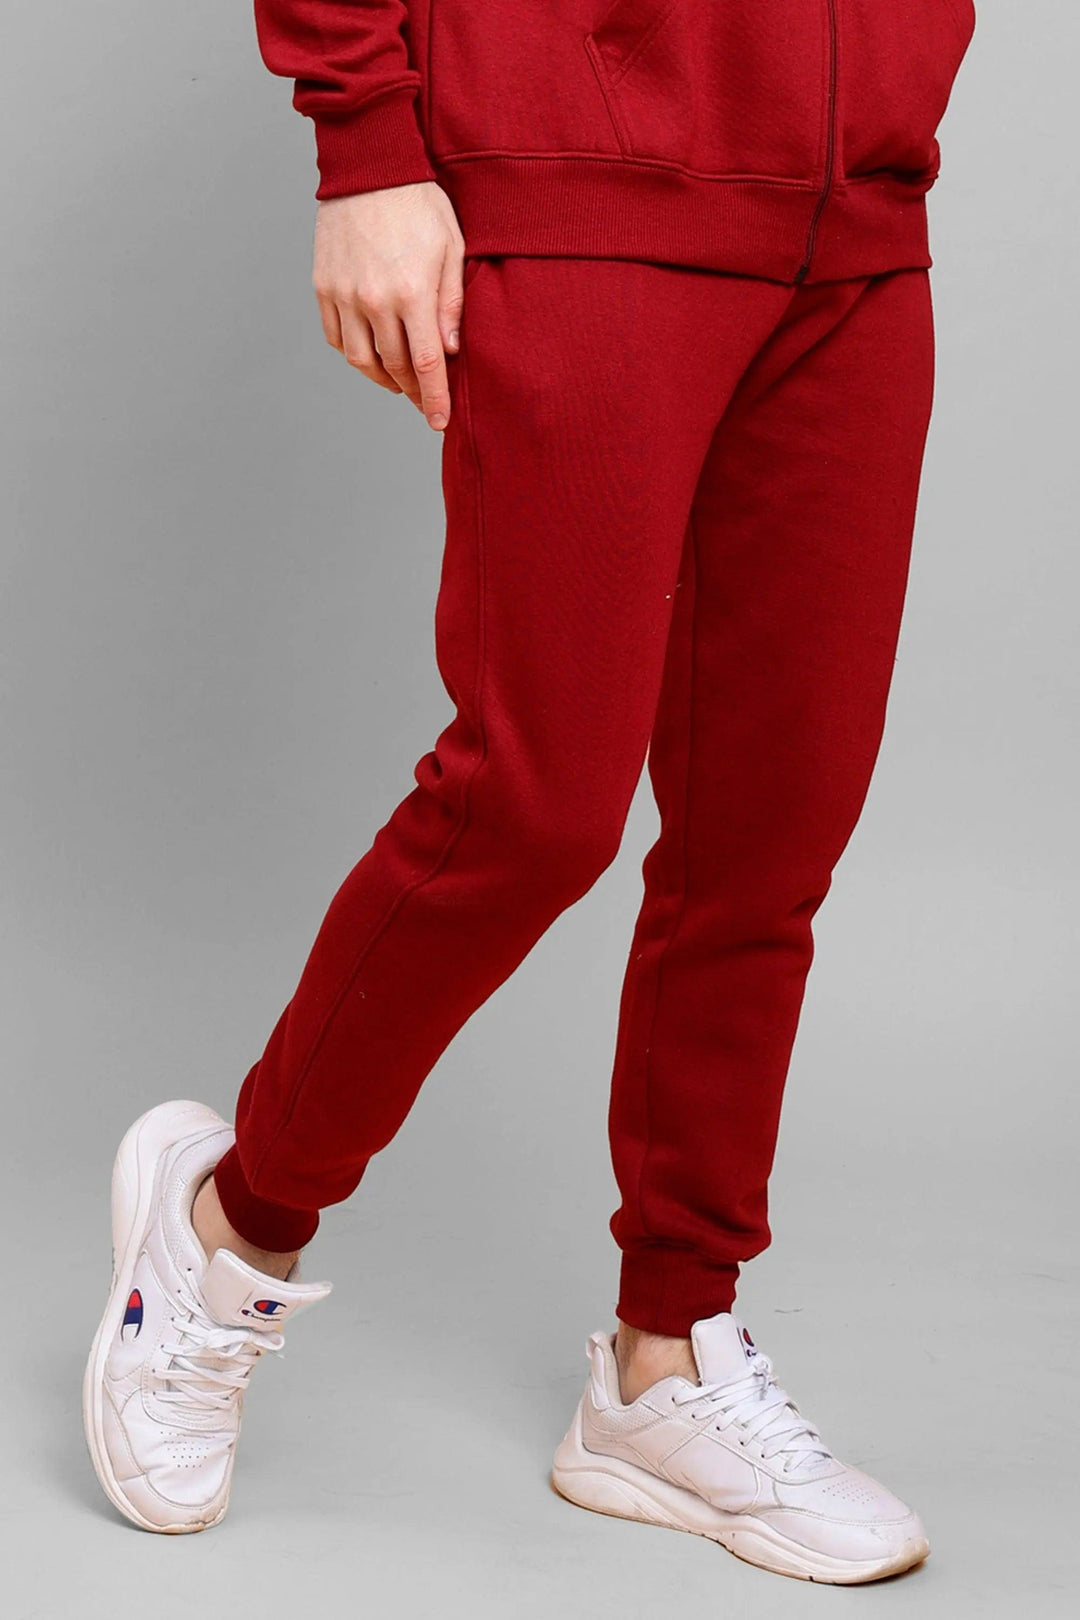 Men's Red Premium Cotton Joggers - Peplos Jeans 